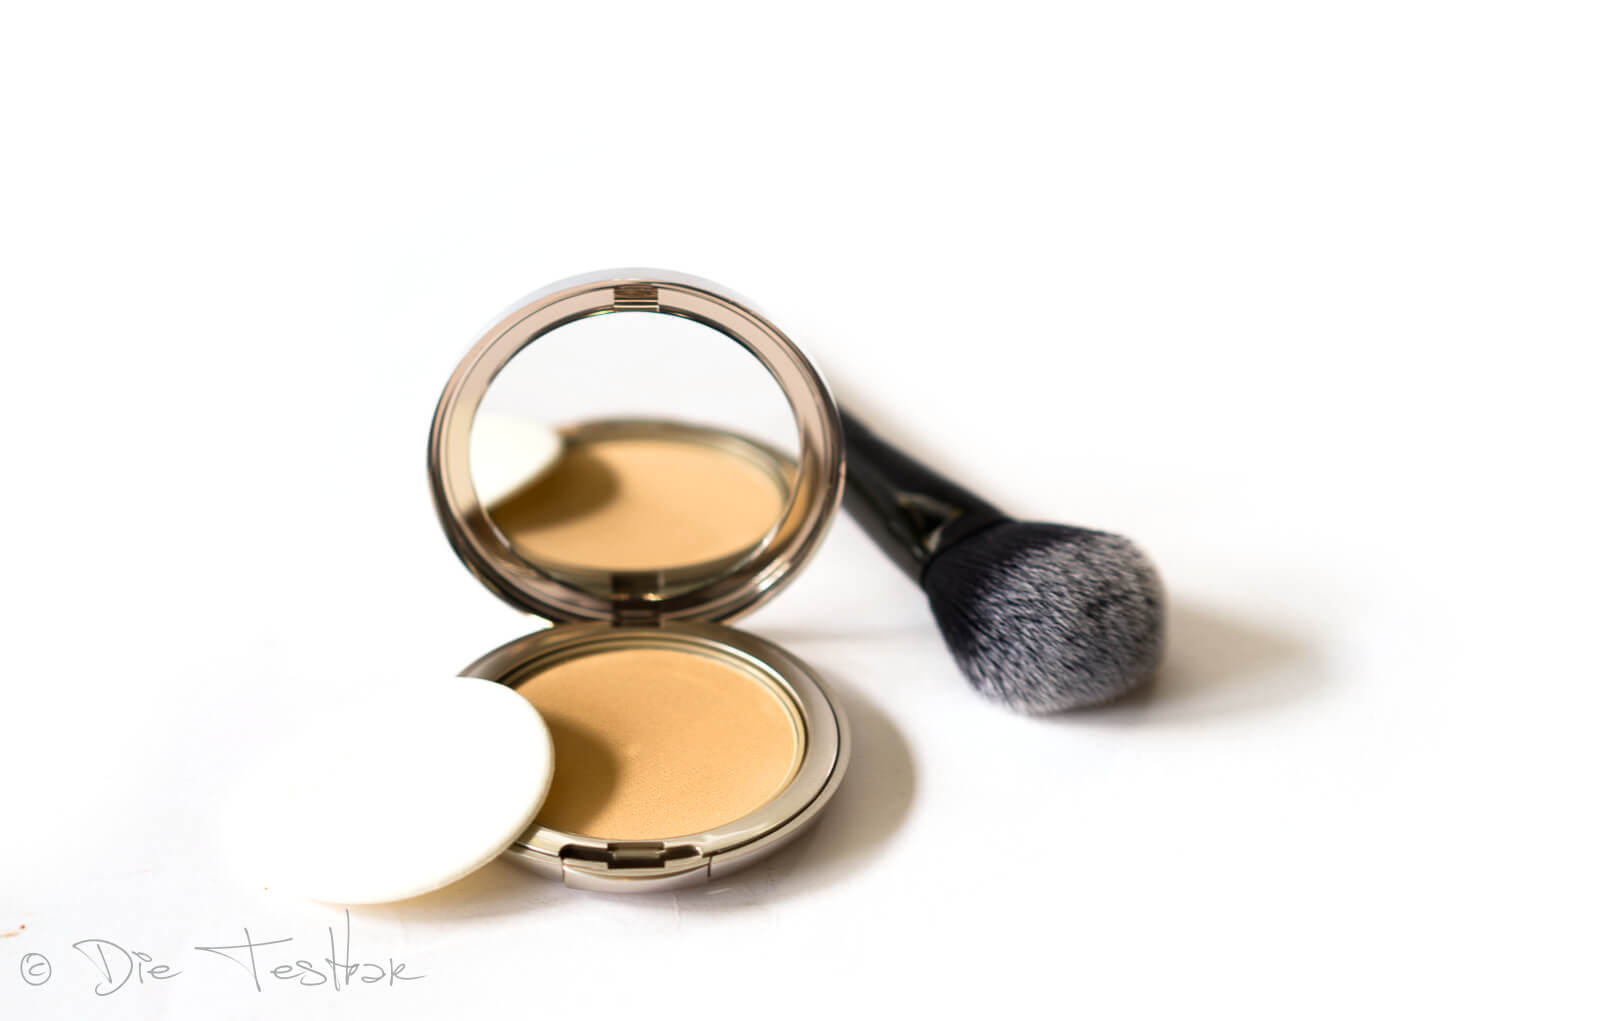 Kosmetik Lieblinge - Make-up und Nagellacke von Artdeco 4